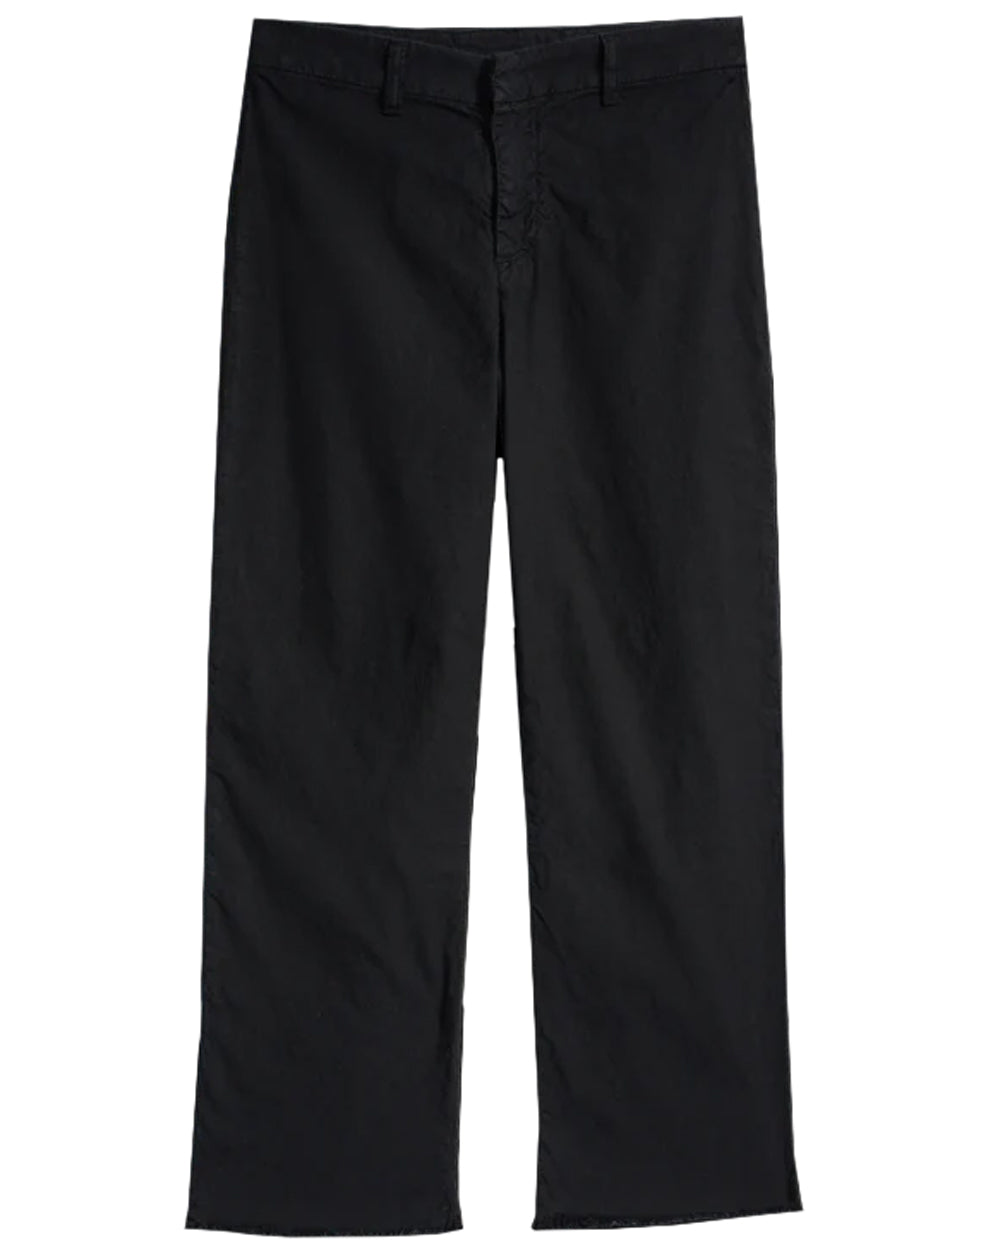 Kinsale Linen Trouser in Black